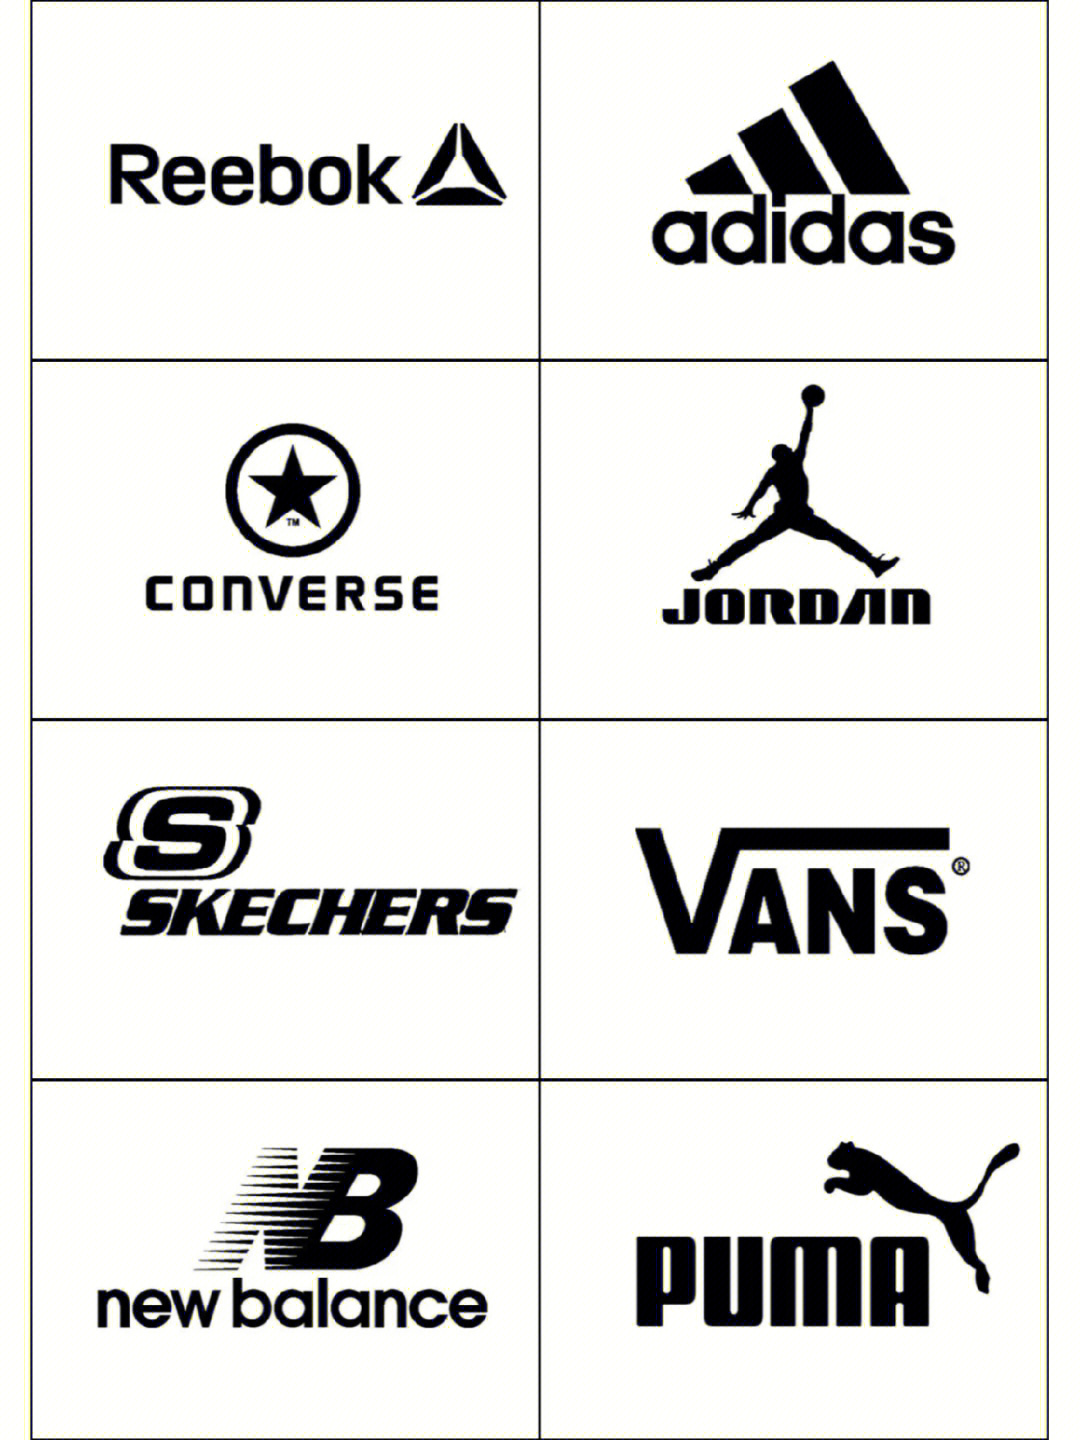 运动品牌logo大全 设计图片